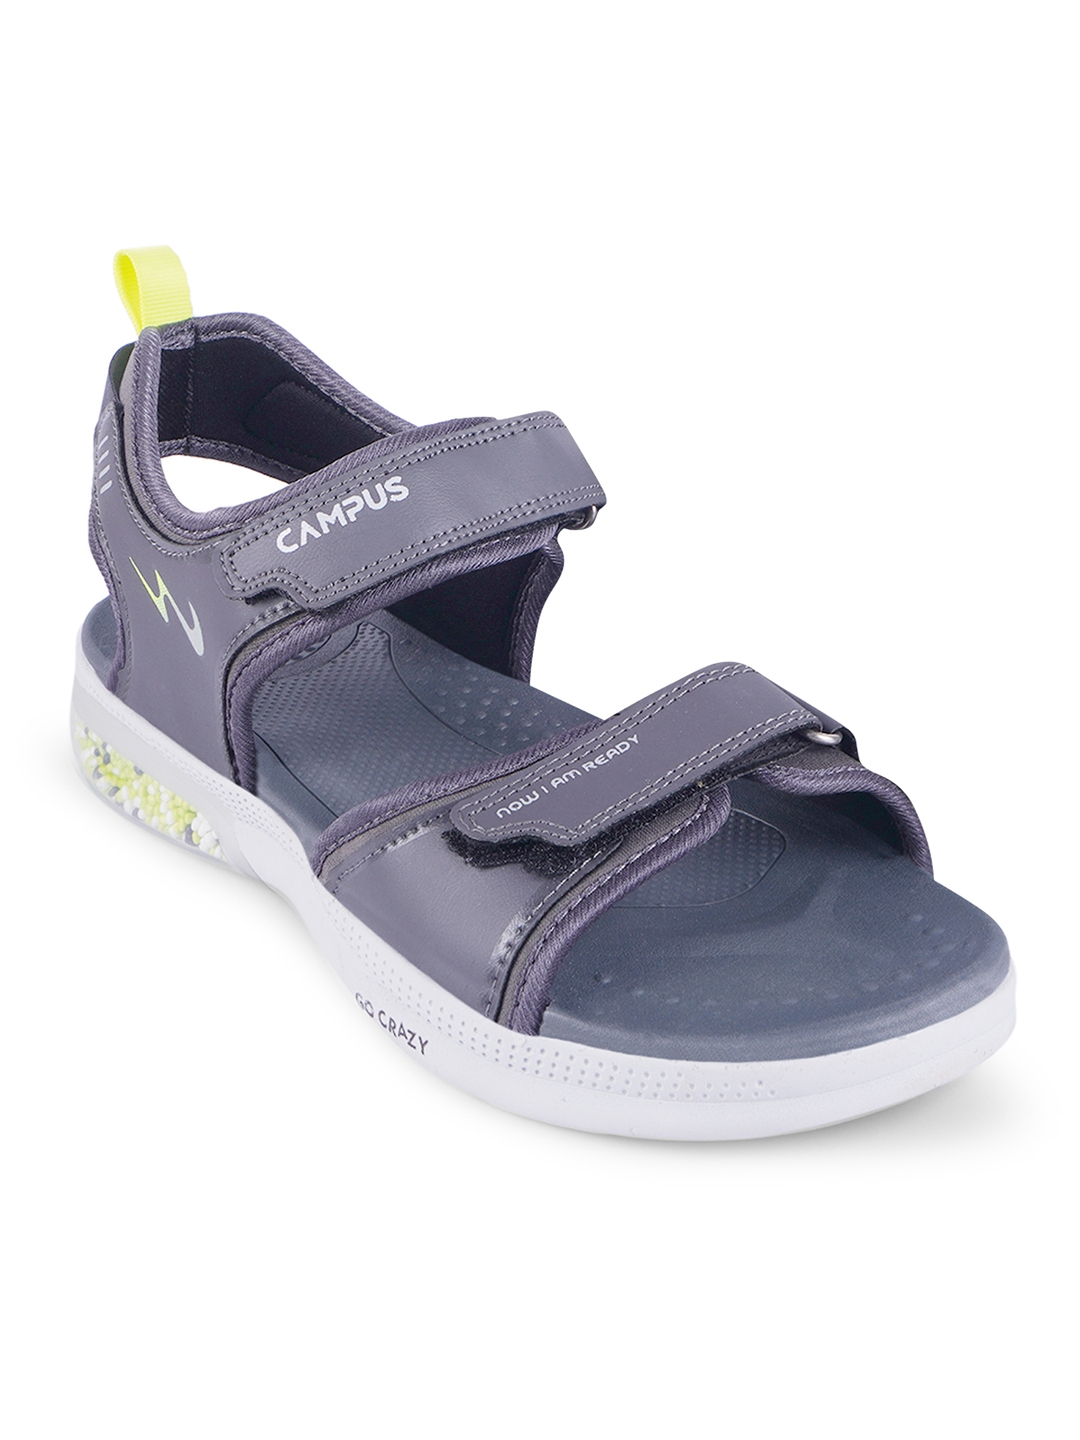 Campus Shoes | GC-2303